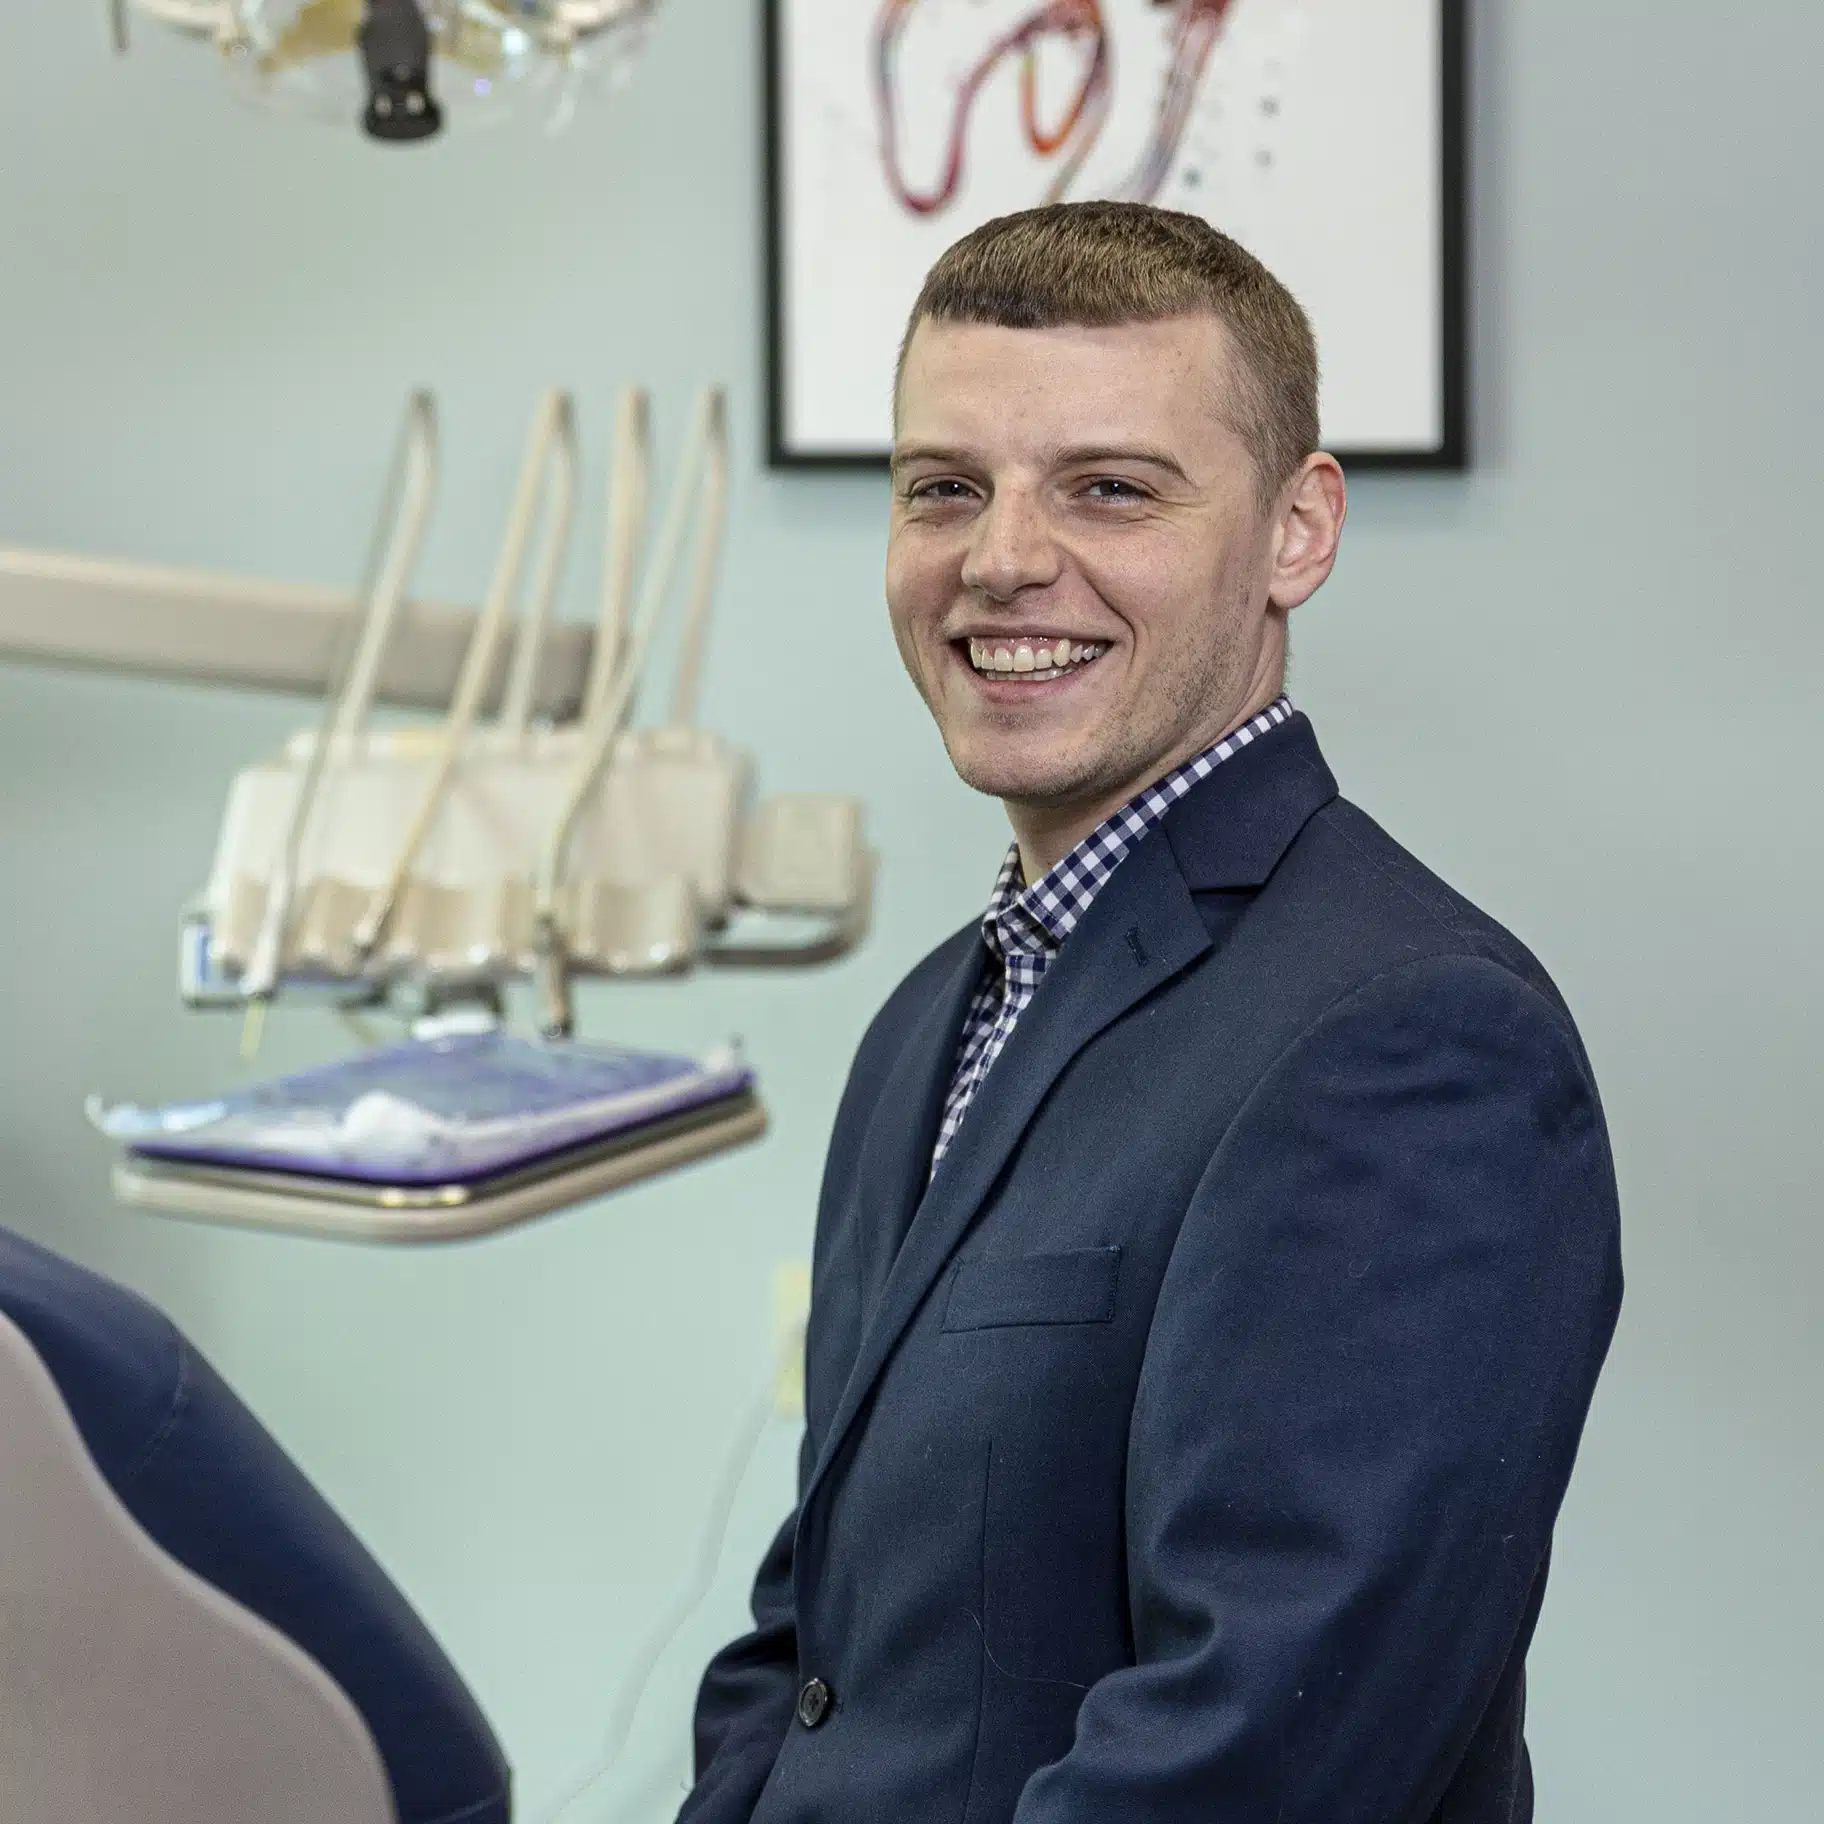 Dr. Corey Riemersma at Drews Dental Services in Lewiston, Maine